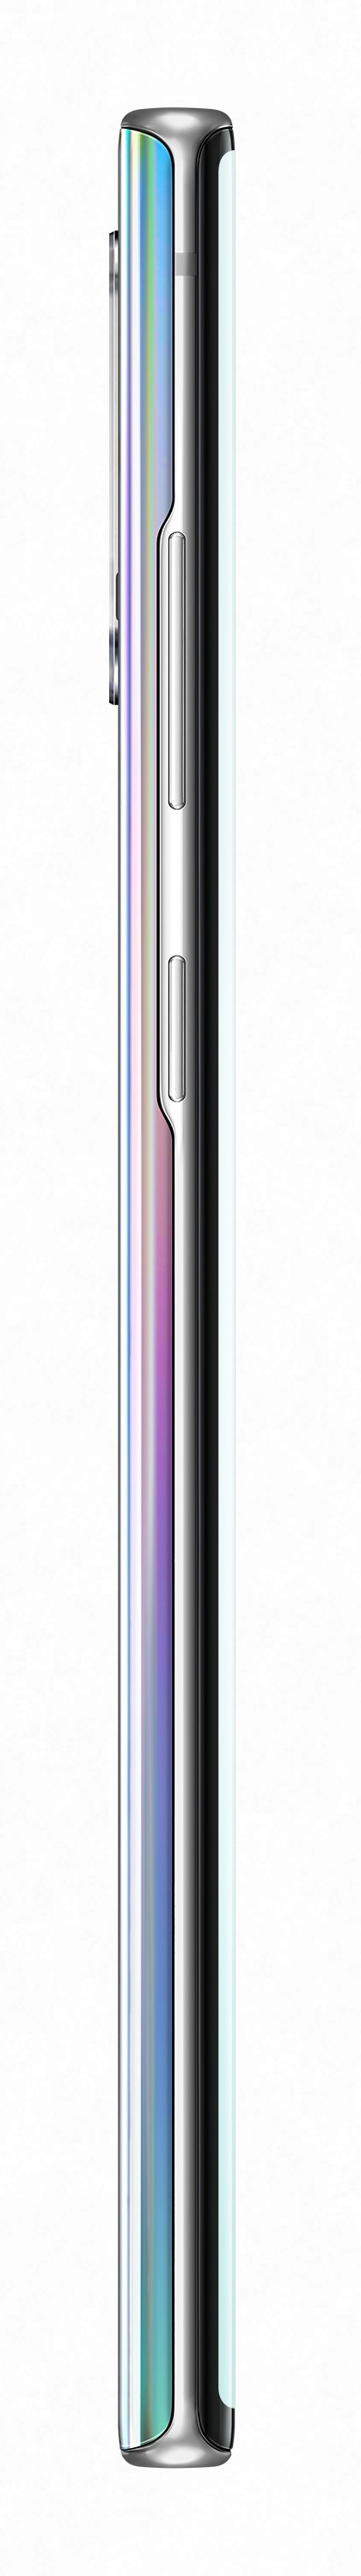 Samsung SM-N975F